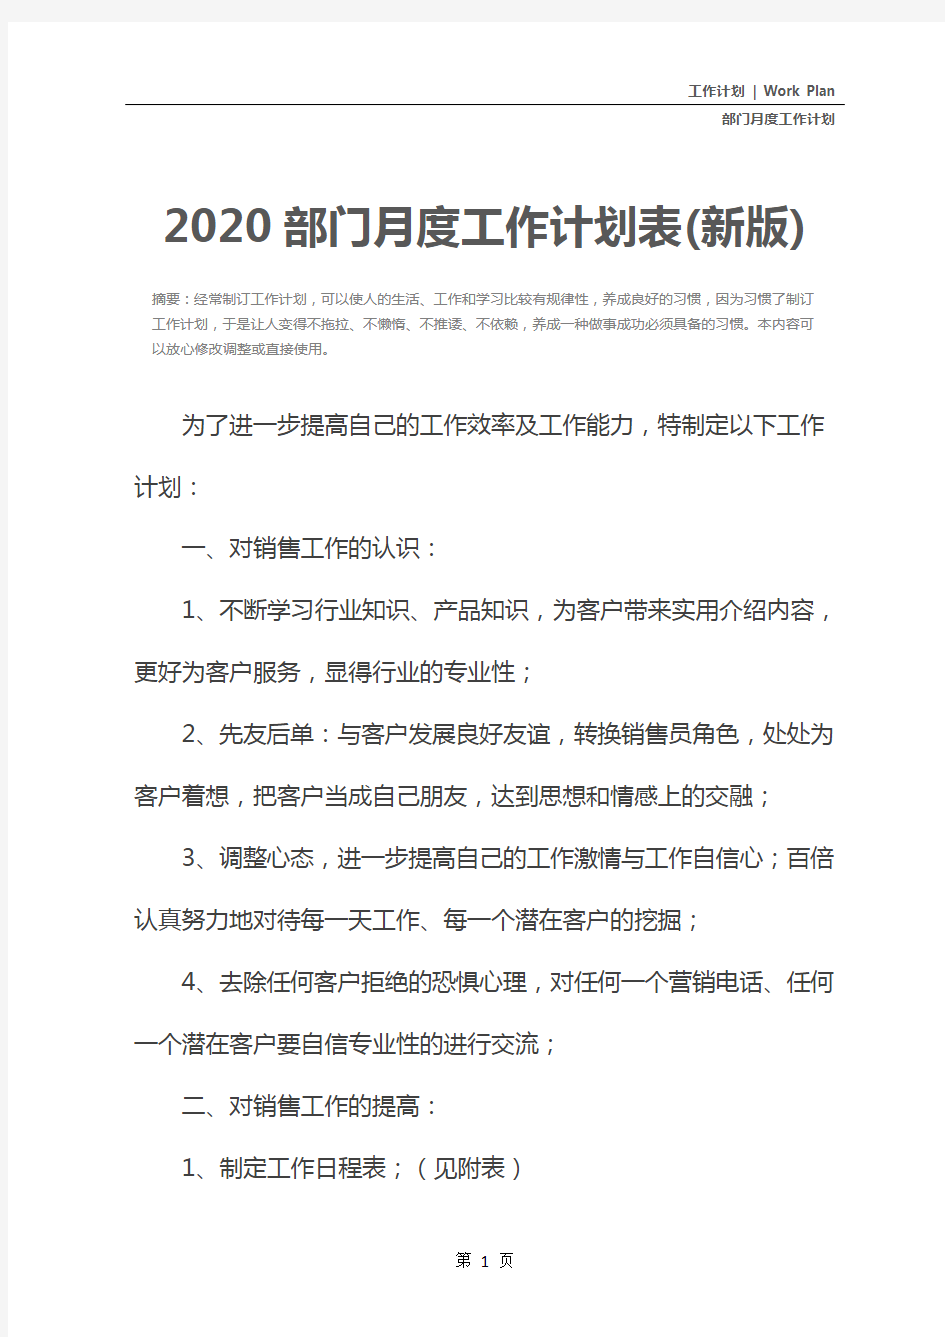 2020部门月度工作计划表(新版)